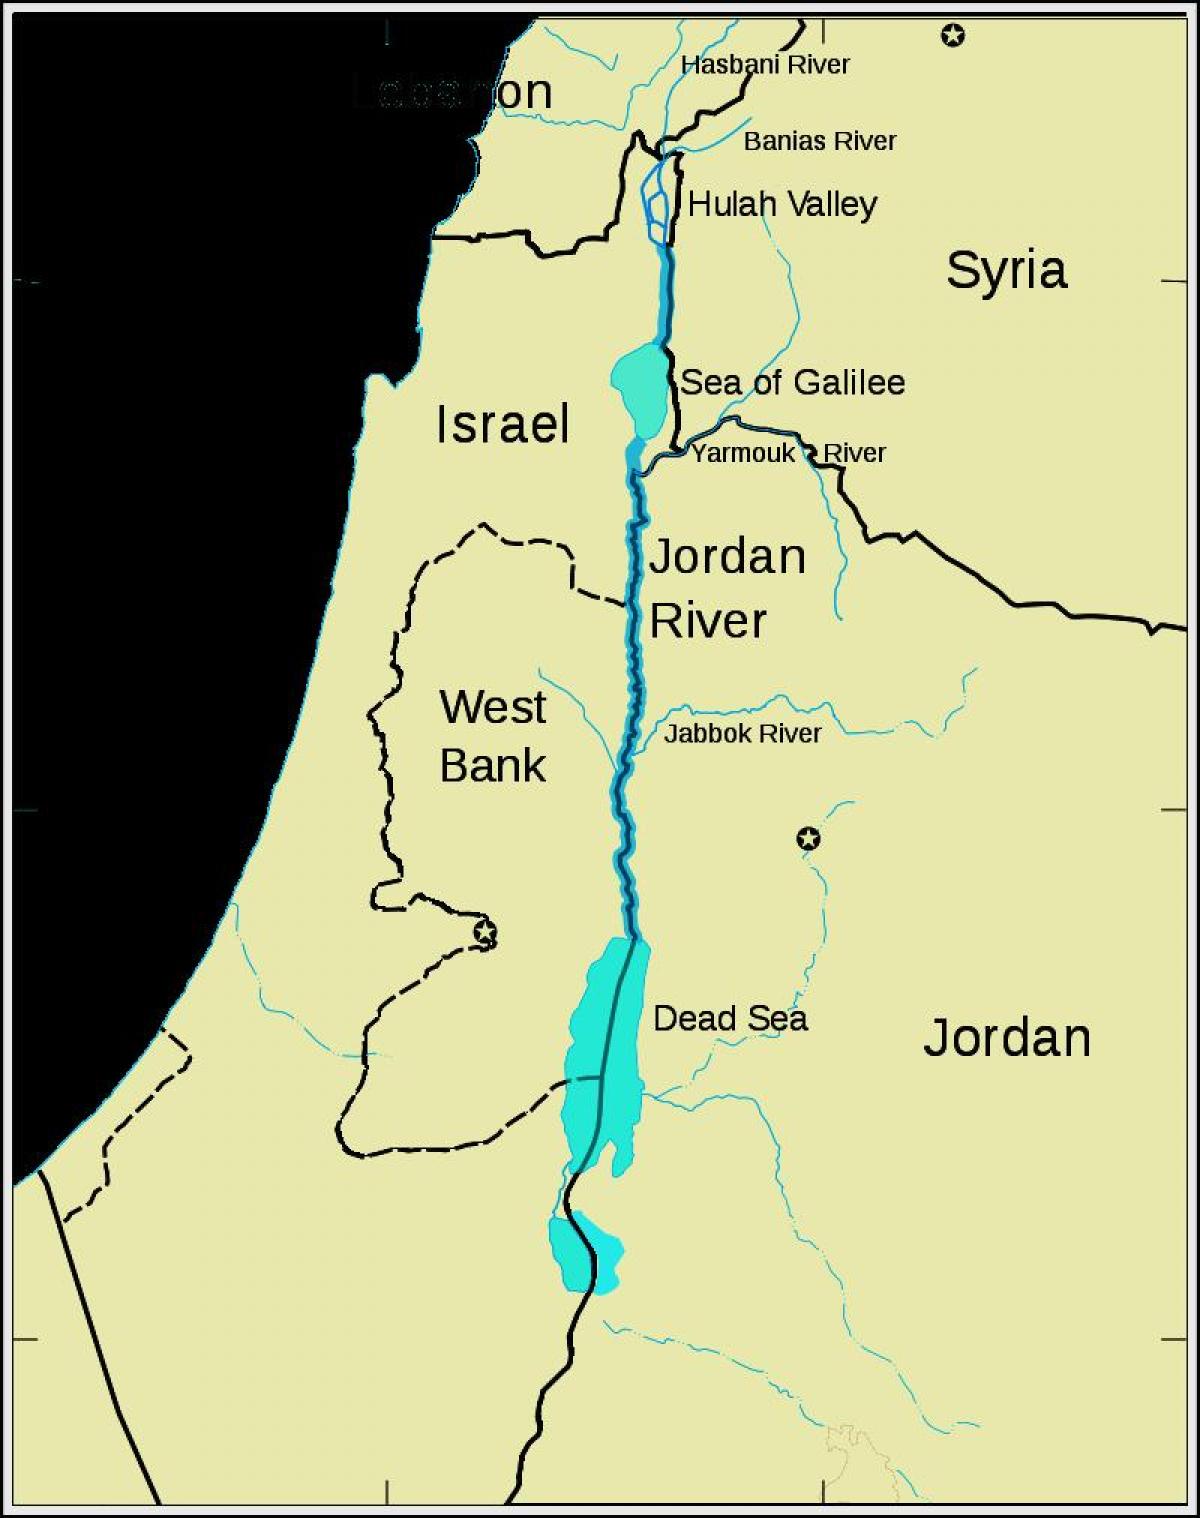 Jordani jõe lähis-ida kaarti